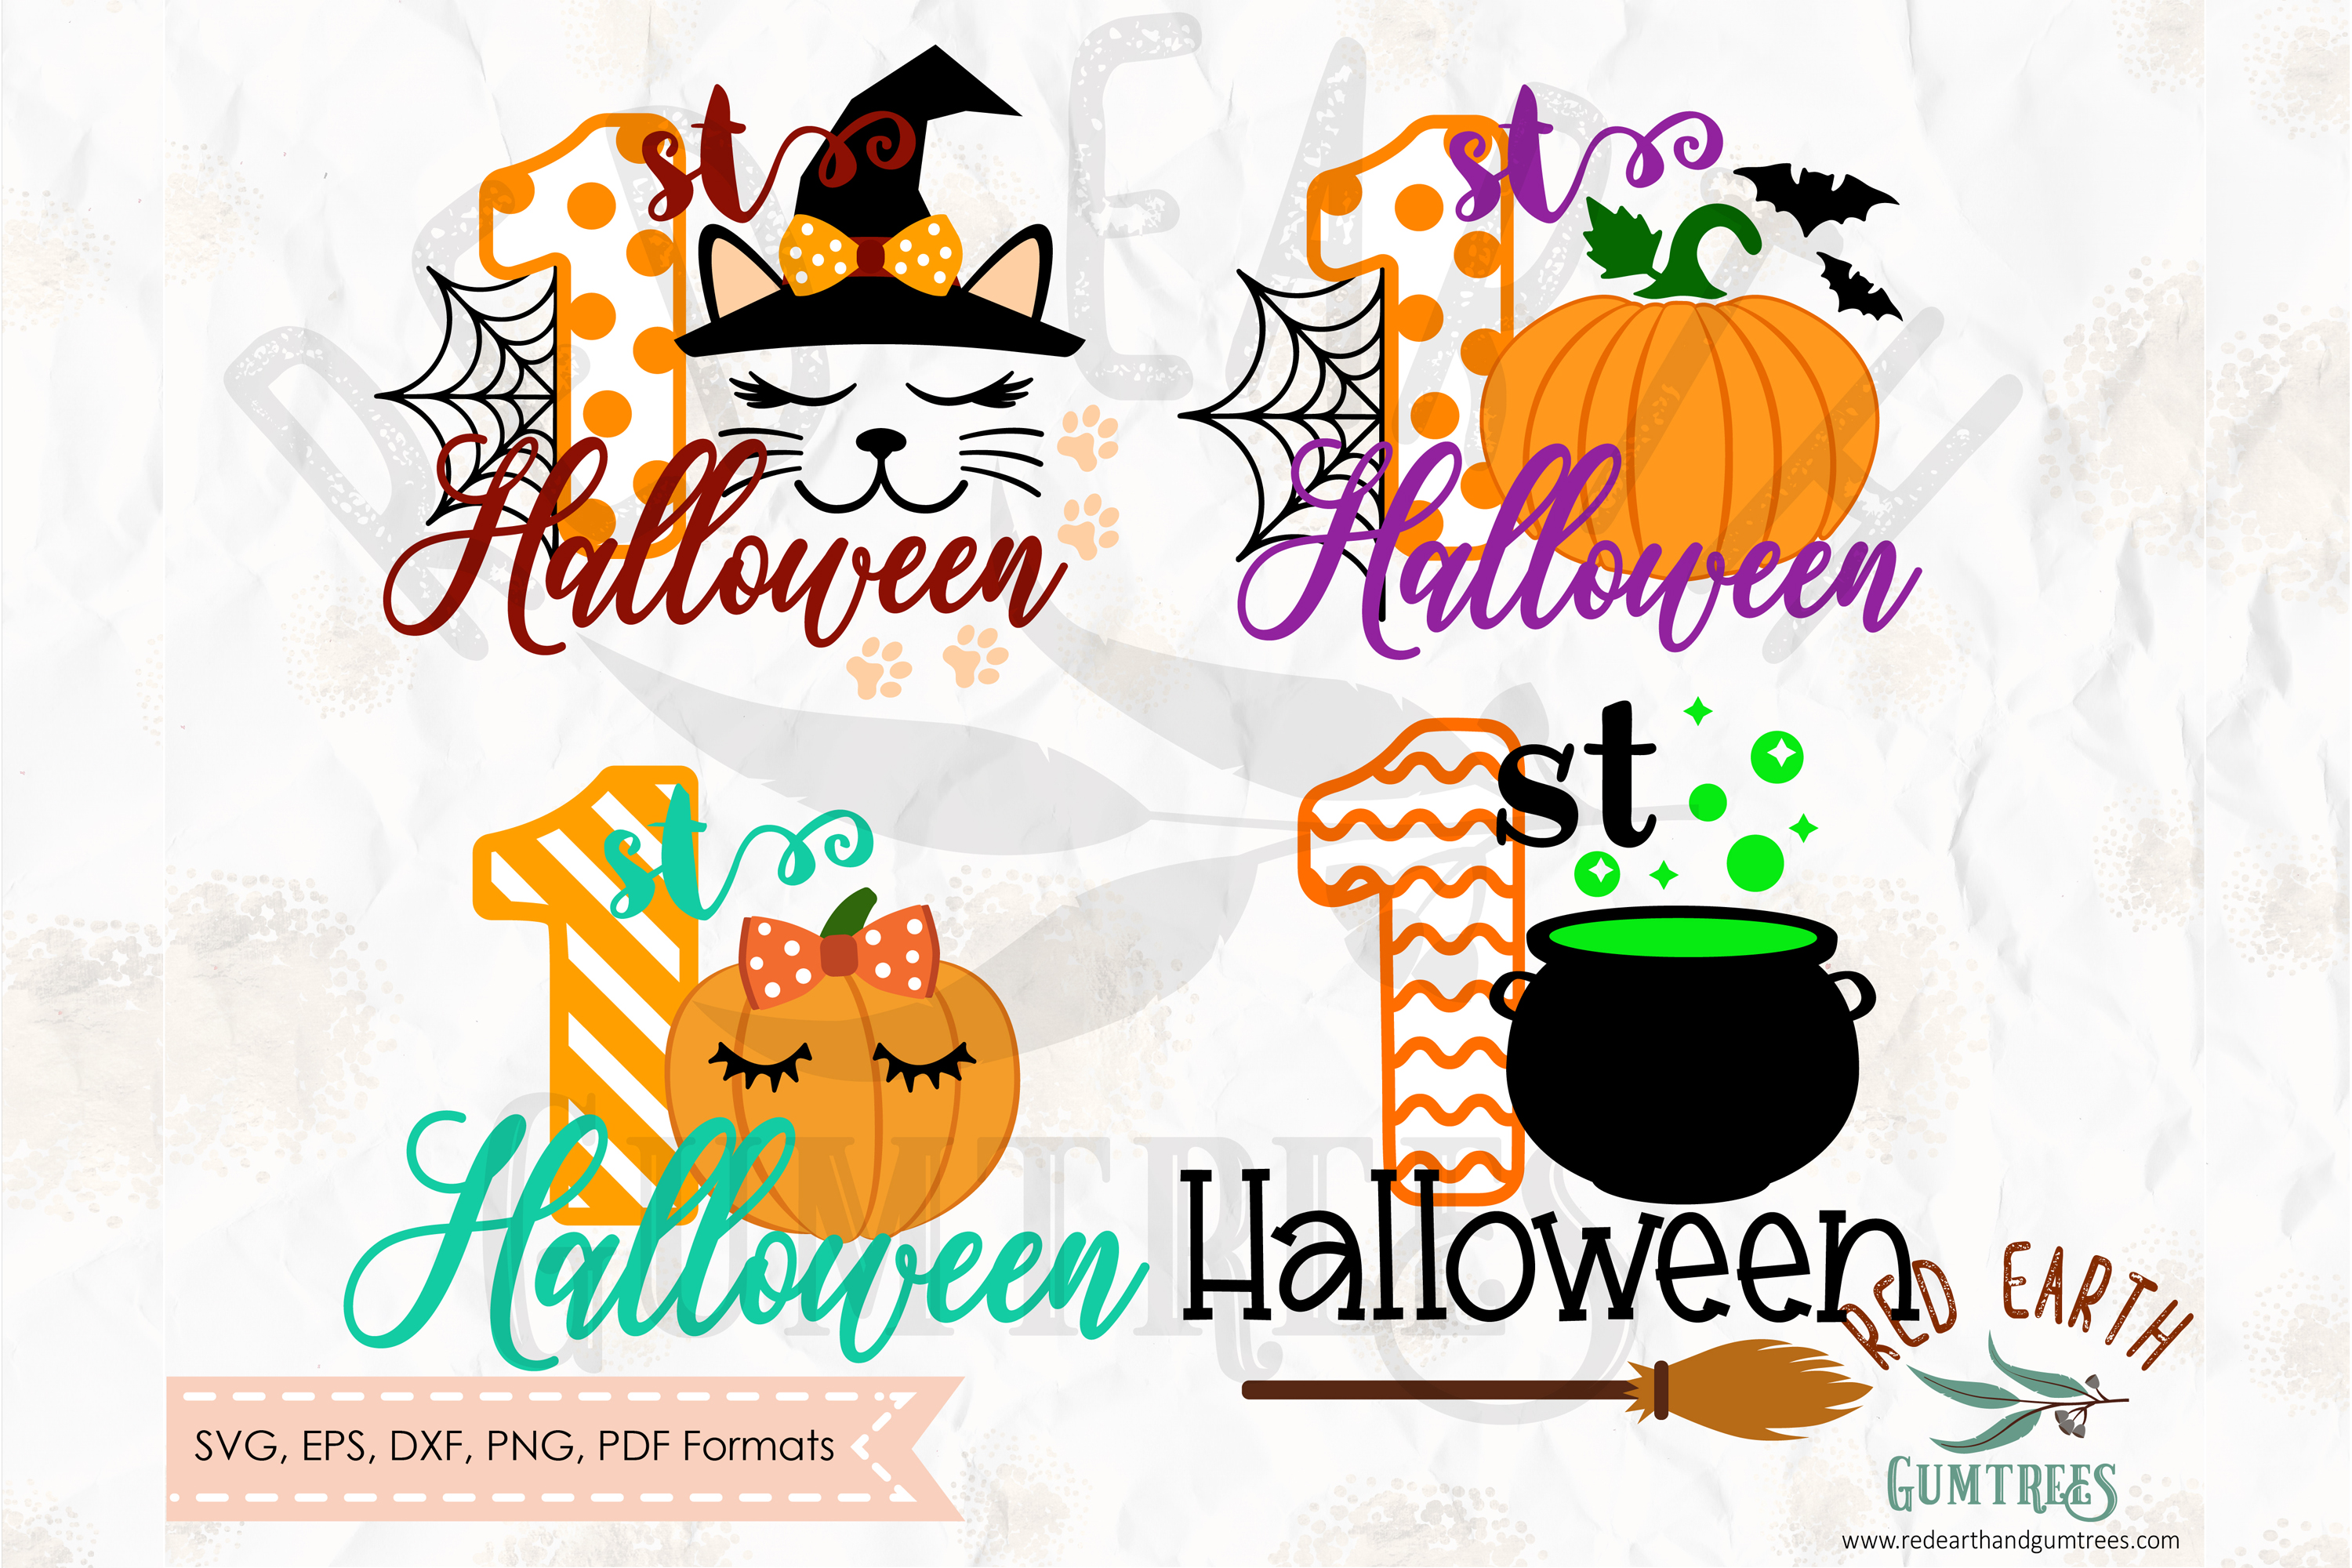 Download 1st Halloween bundle design in SVG,DXF,PNG, EPS formats